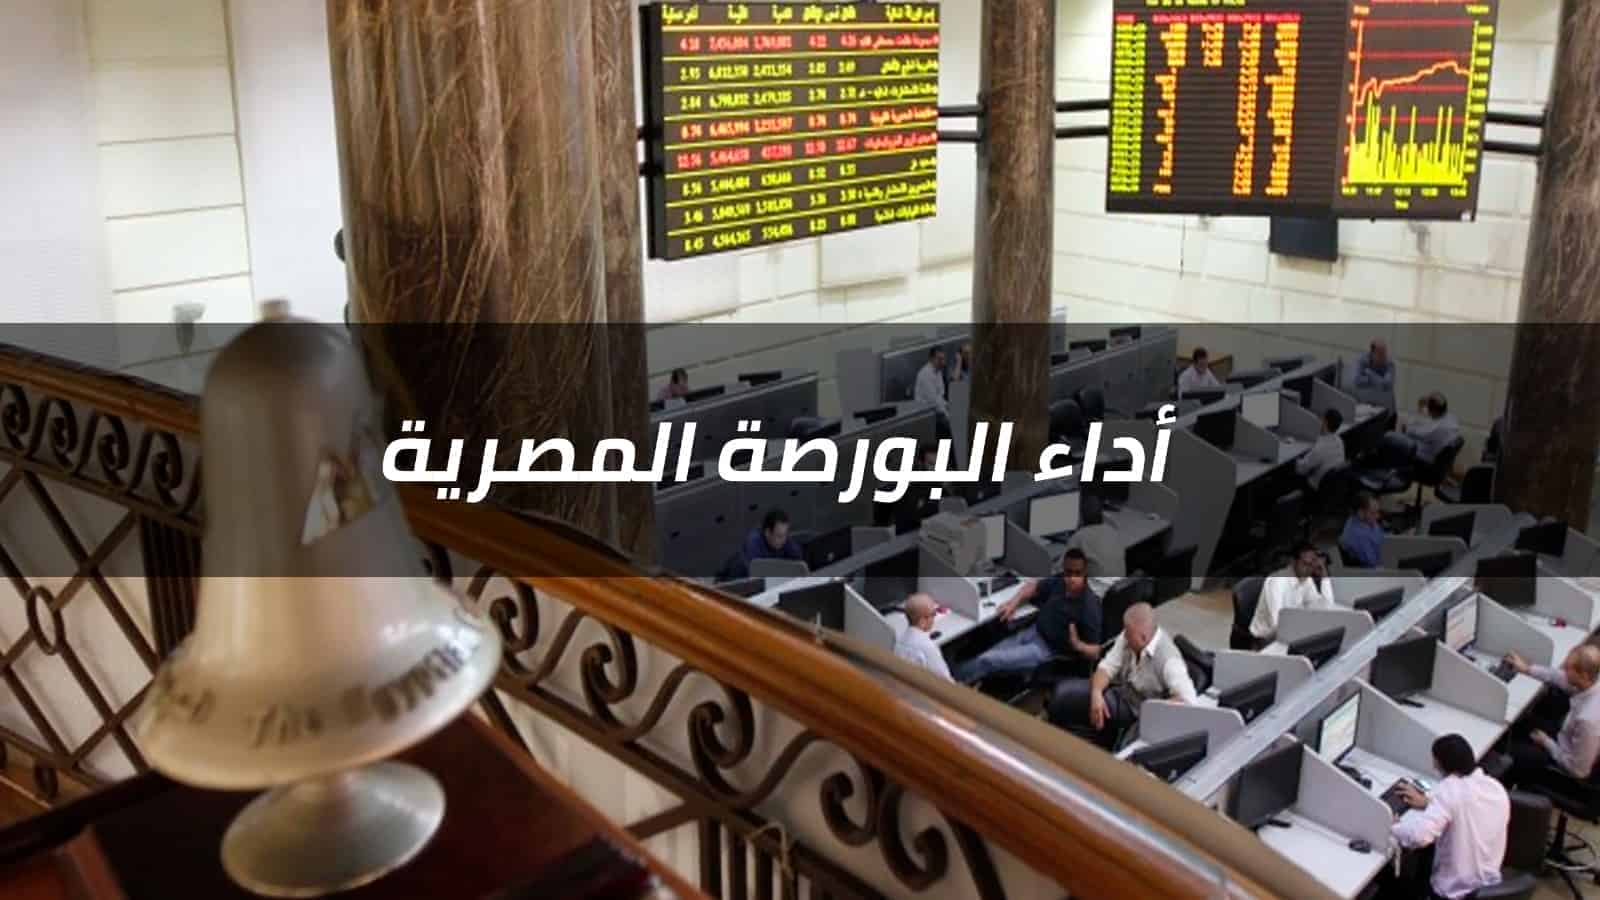 تلون مؤشرات السوق بالأخضر بختام تعاملات الأبوع بدفعة من مشتريات المصريين